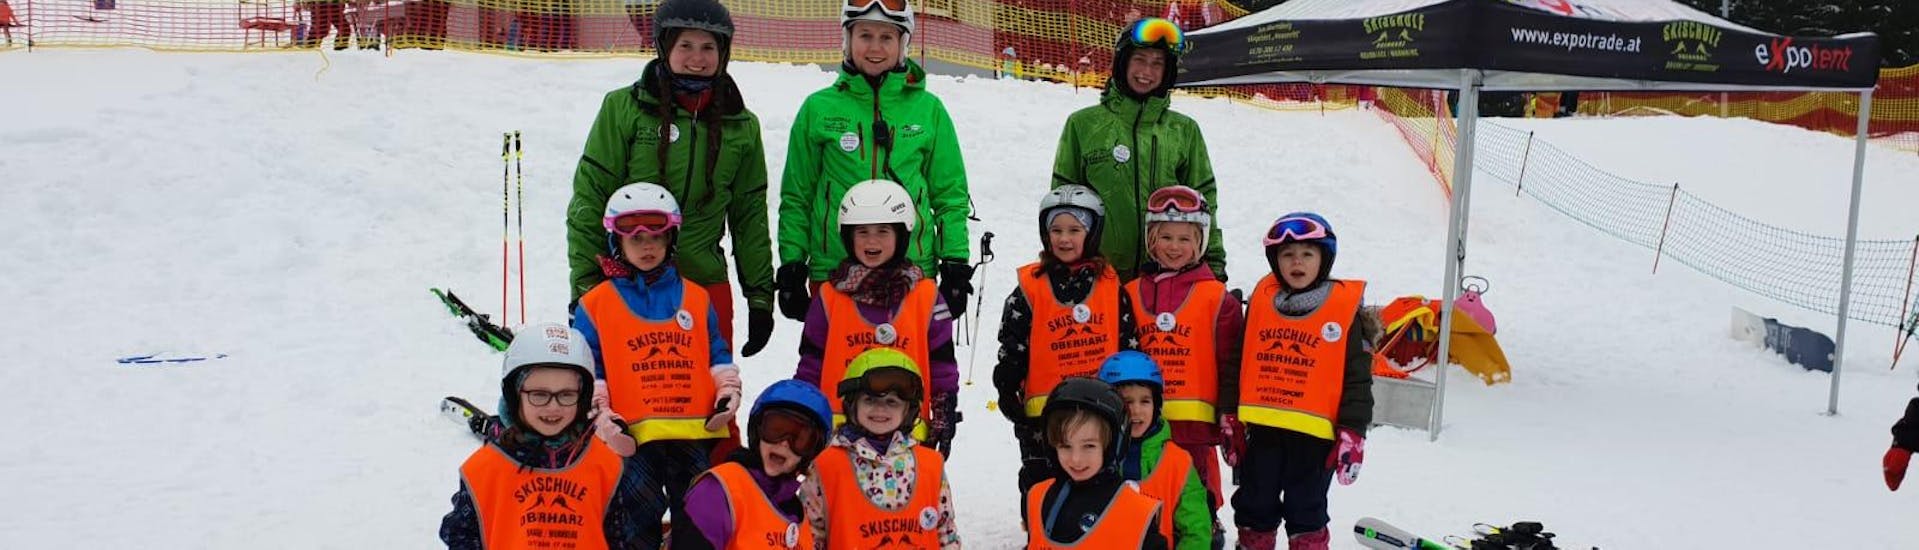 Lezioni di sci per bambini a partire da 9 anni con esperienza.